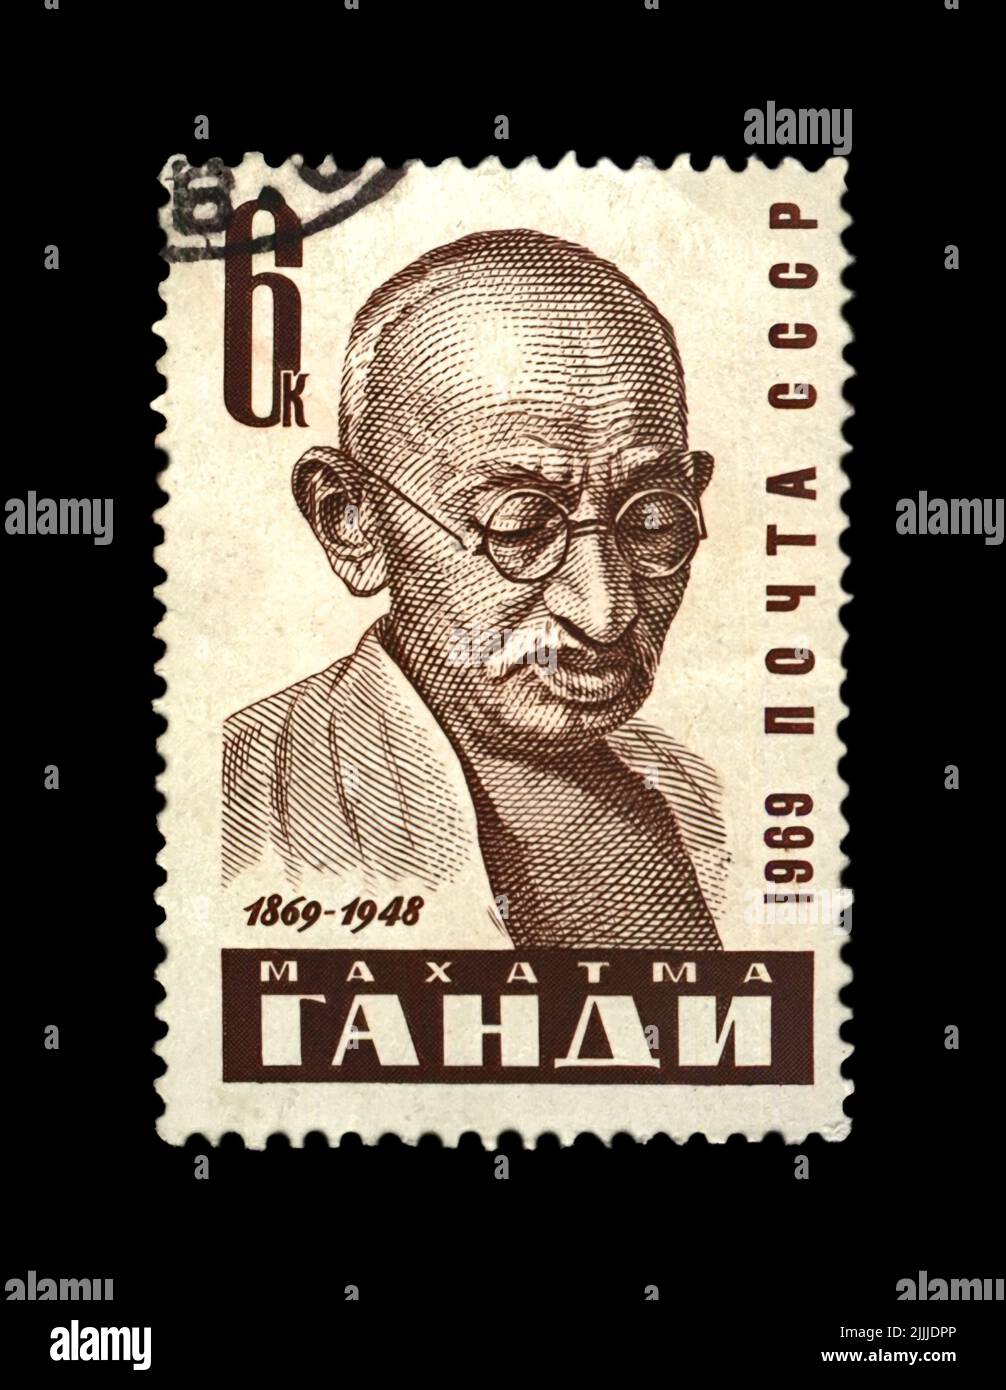 Mahatma Gandhi (1869-1948) alias Mohandas Karamchand Gandhi, berühmter indischer Aktivist, abgesagte Briefmarke, gedruckt in der UdSSR Stockfoto